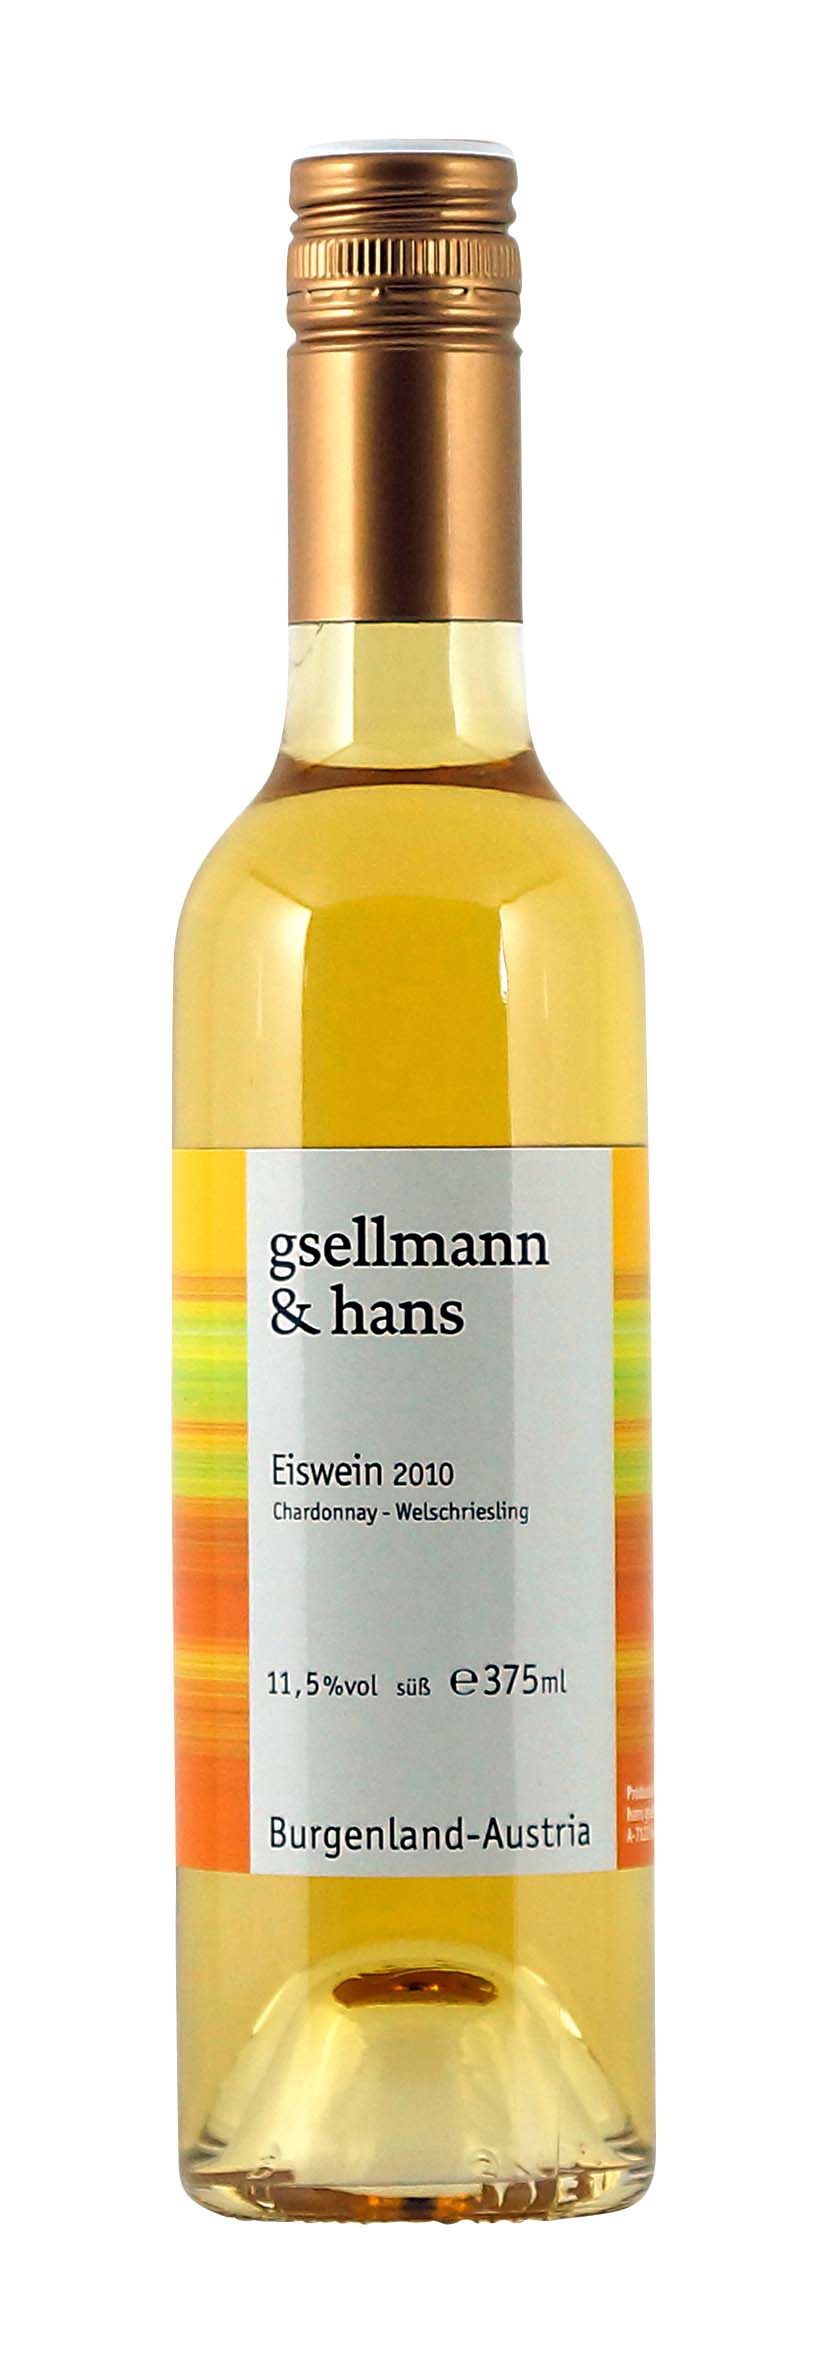 Eiswein Chardonnay Welschriesling 2010